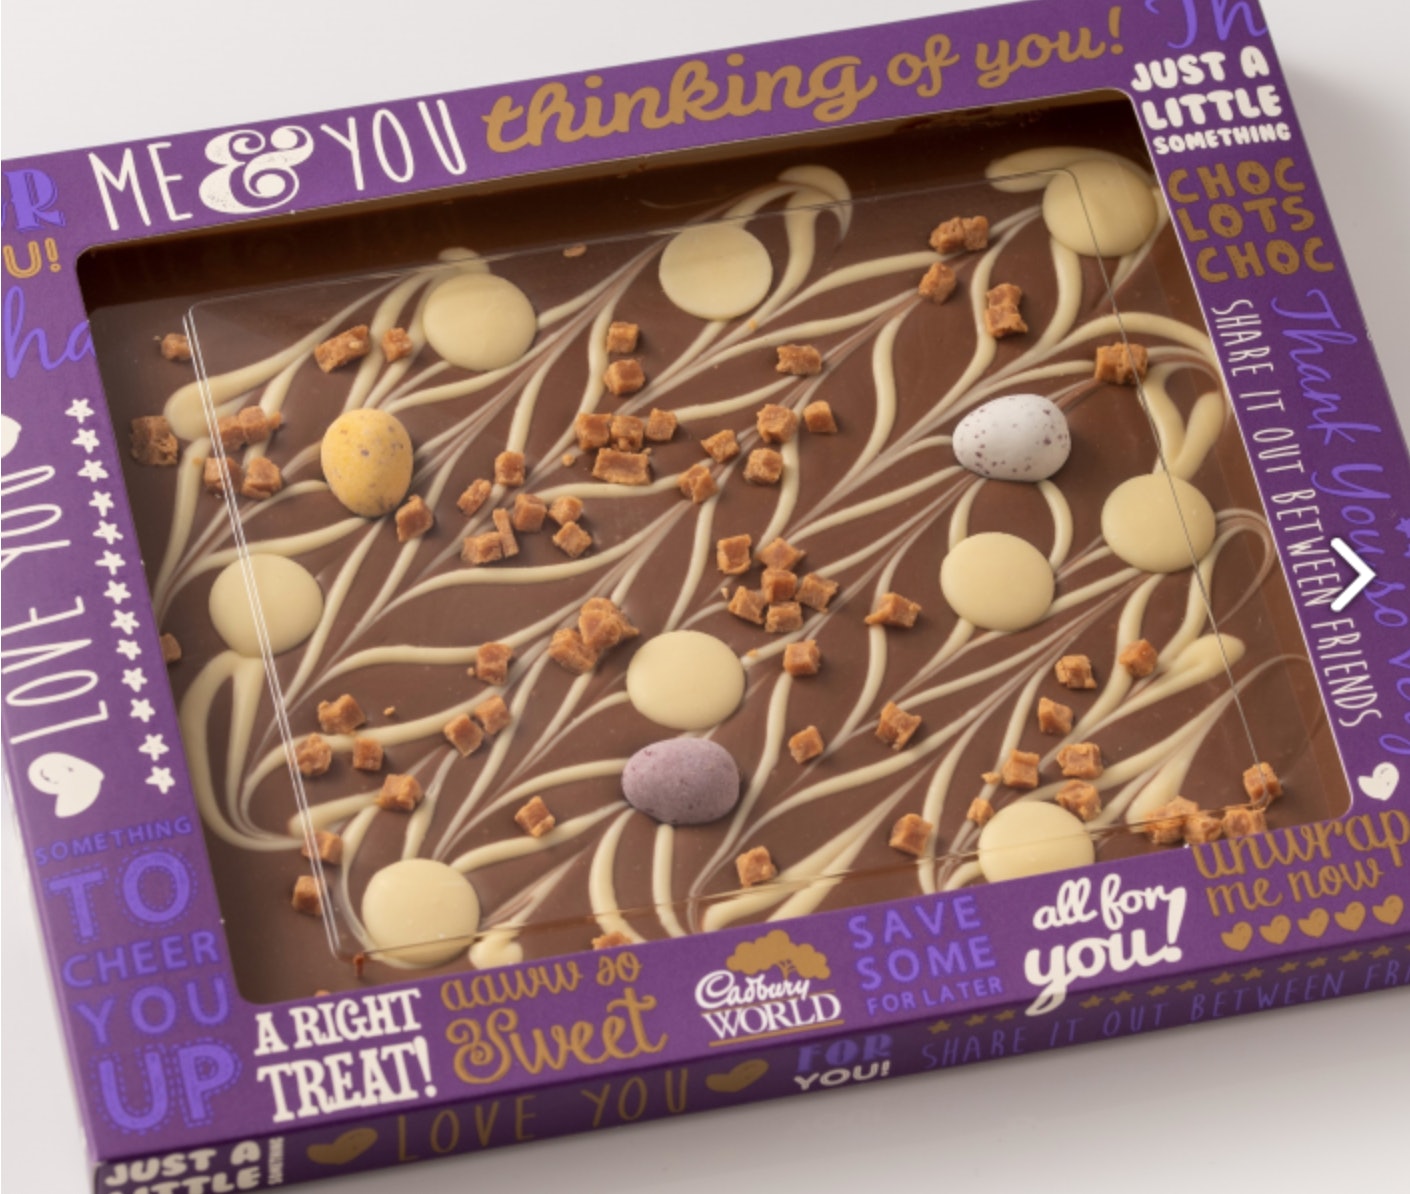 Oui, vous pouvez réellement faire votre propre barre de chocolat Cadbury's maintenant